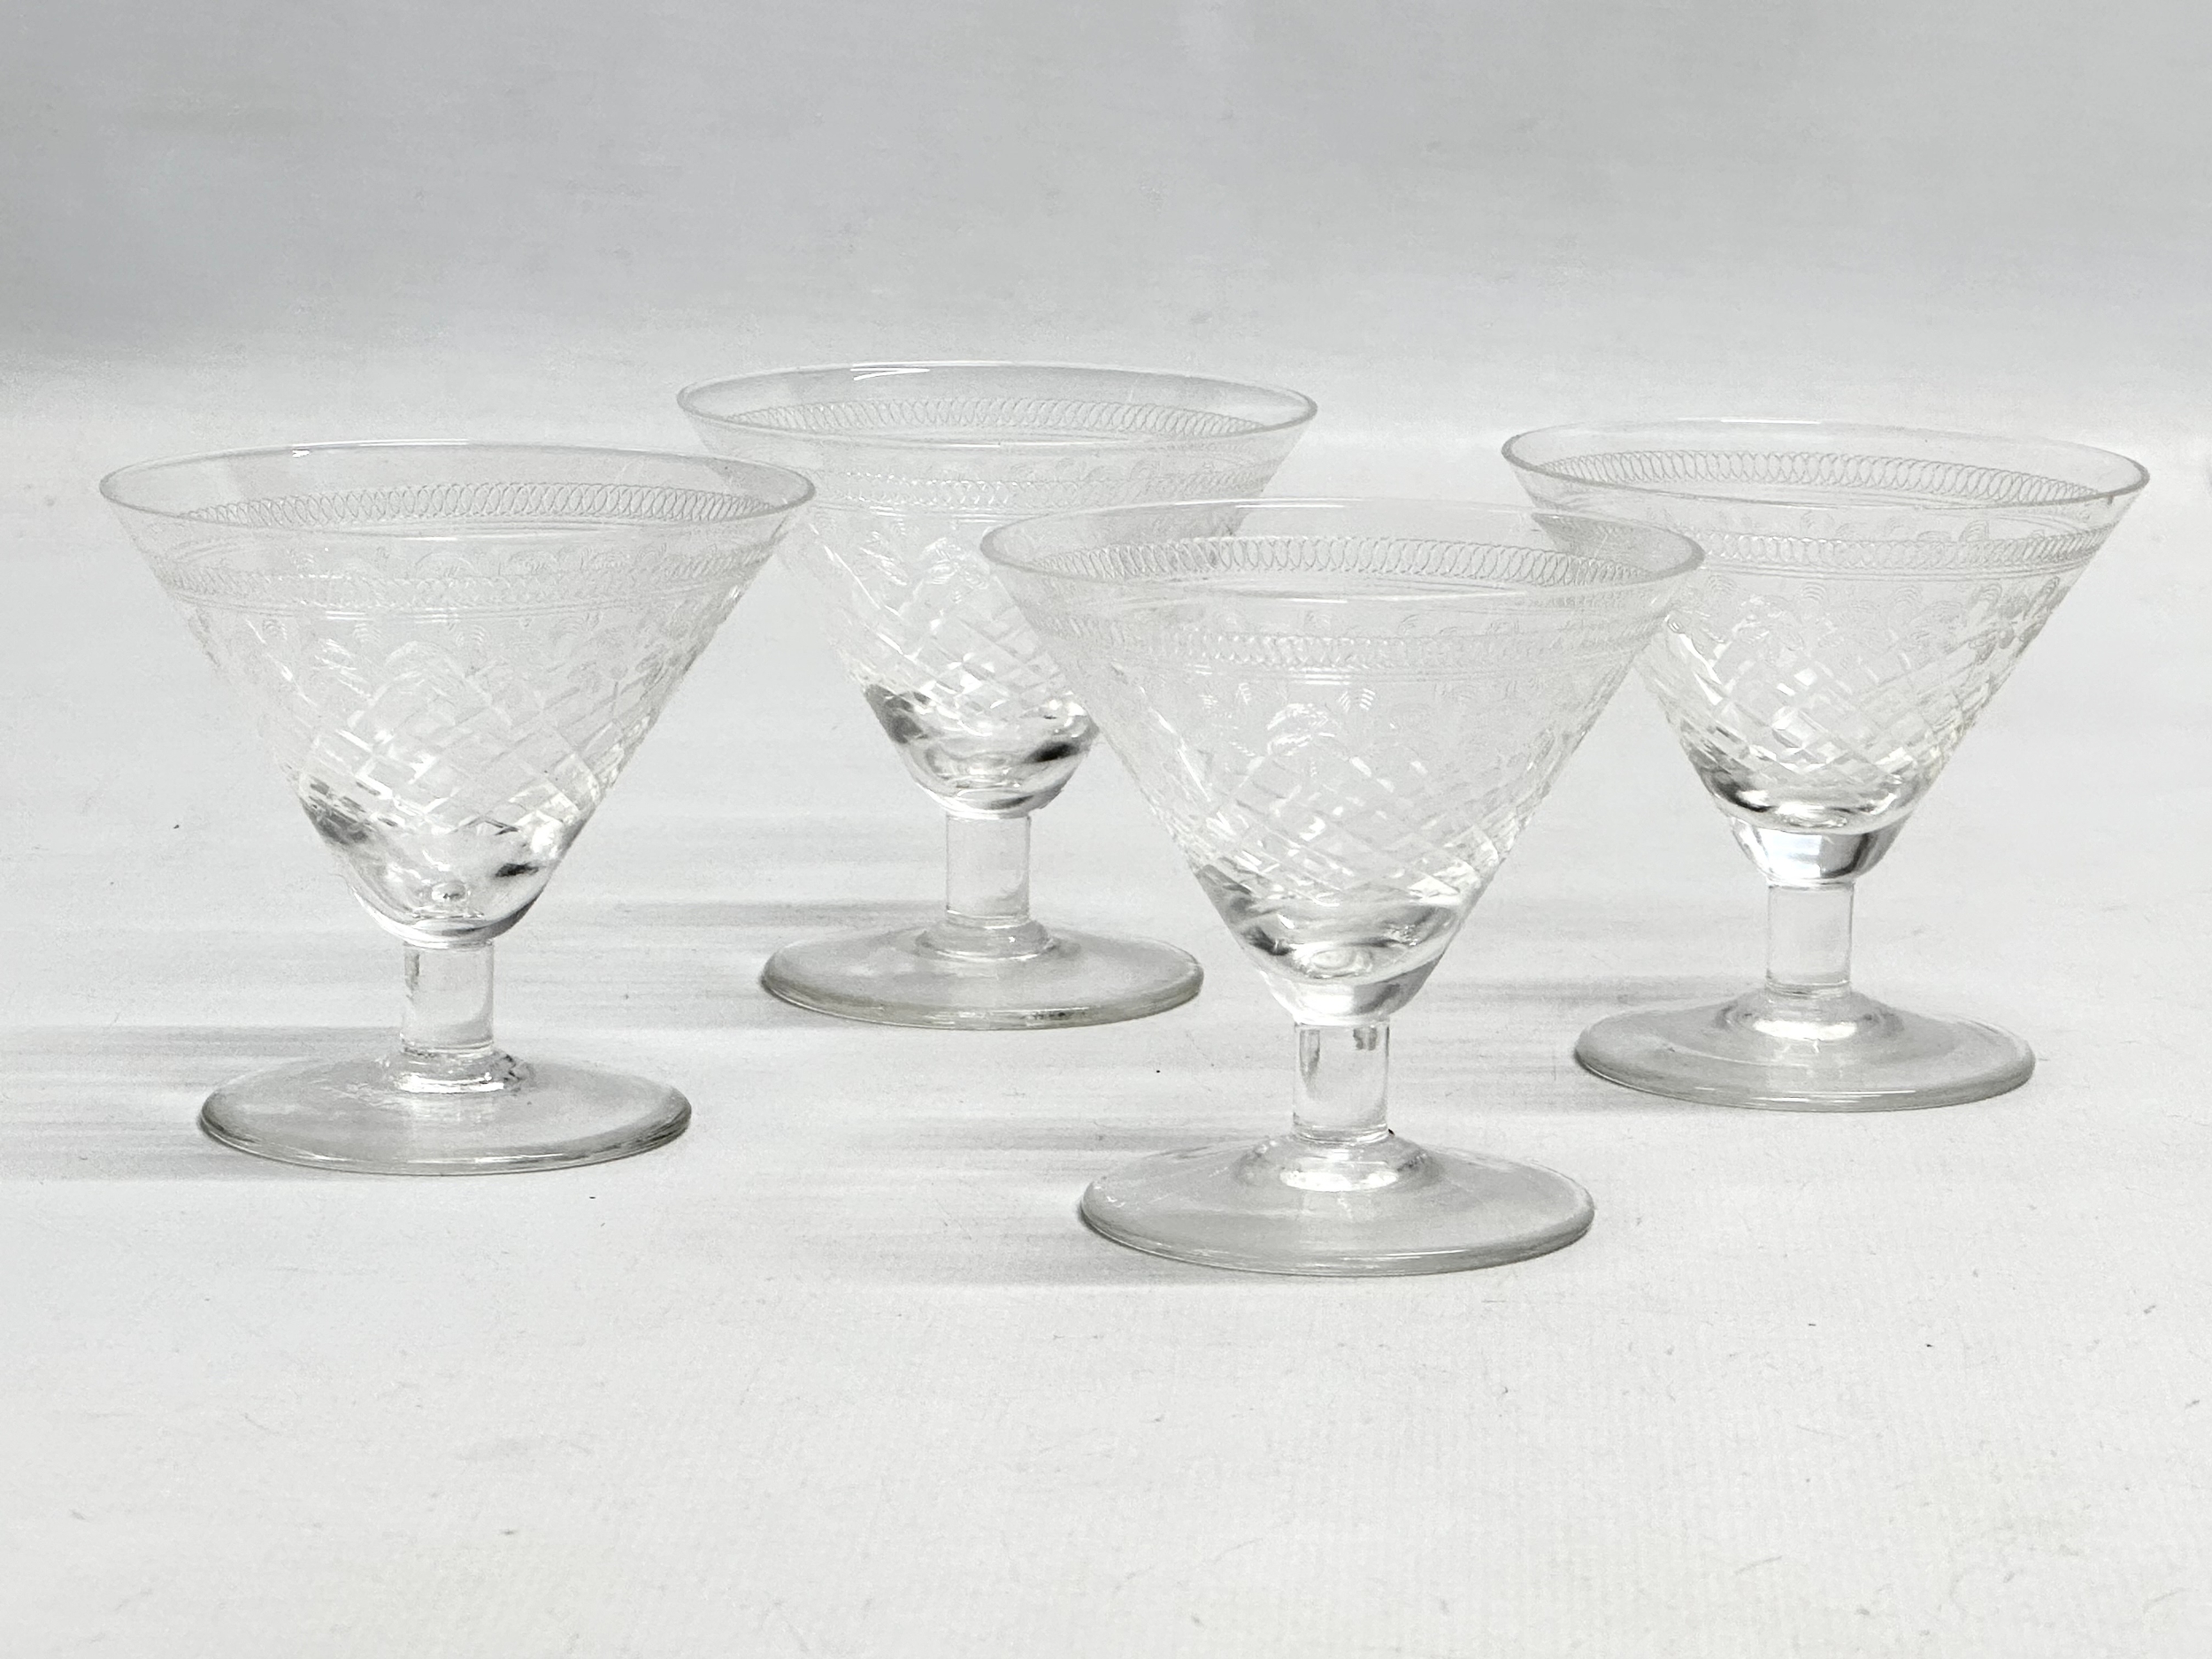 A set of 4 Edwardian low stem etched liquor glasses. 7x6.5cm